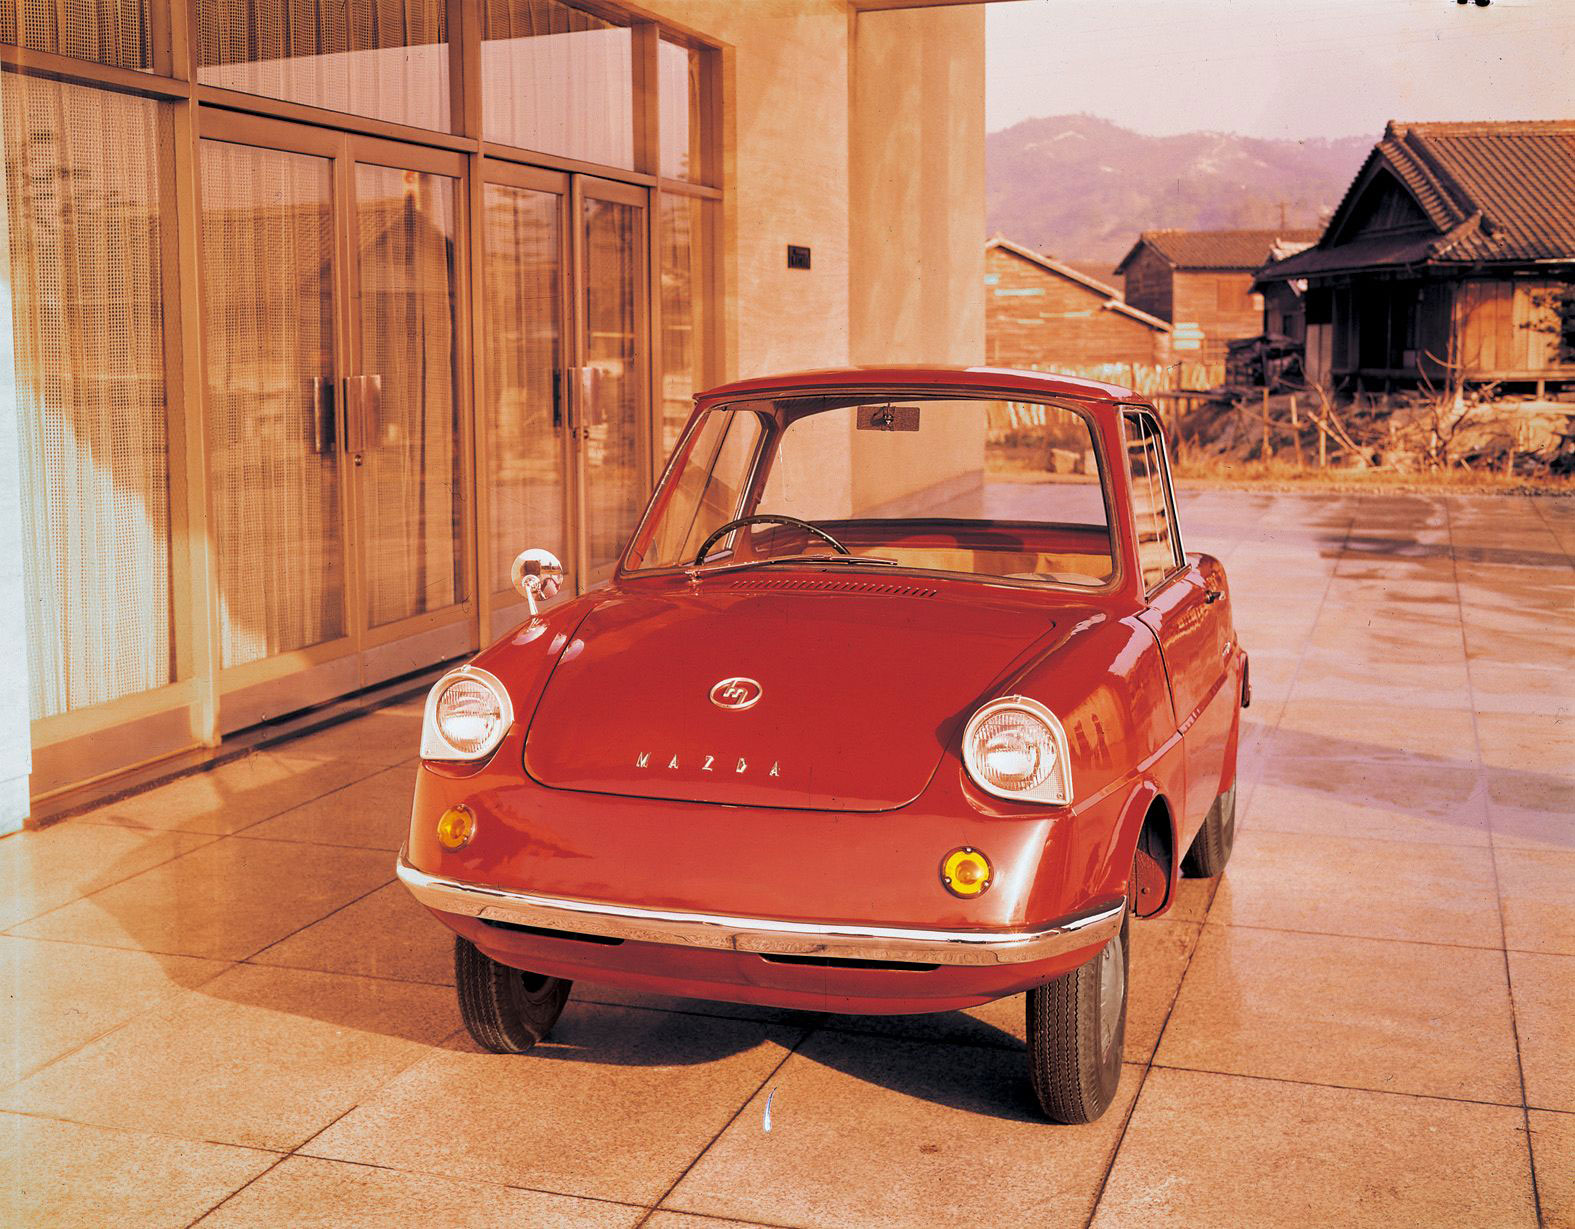 Ένας αιώνας αμφισβήτησης του κατεστημένου, Mazda 1920-2020